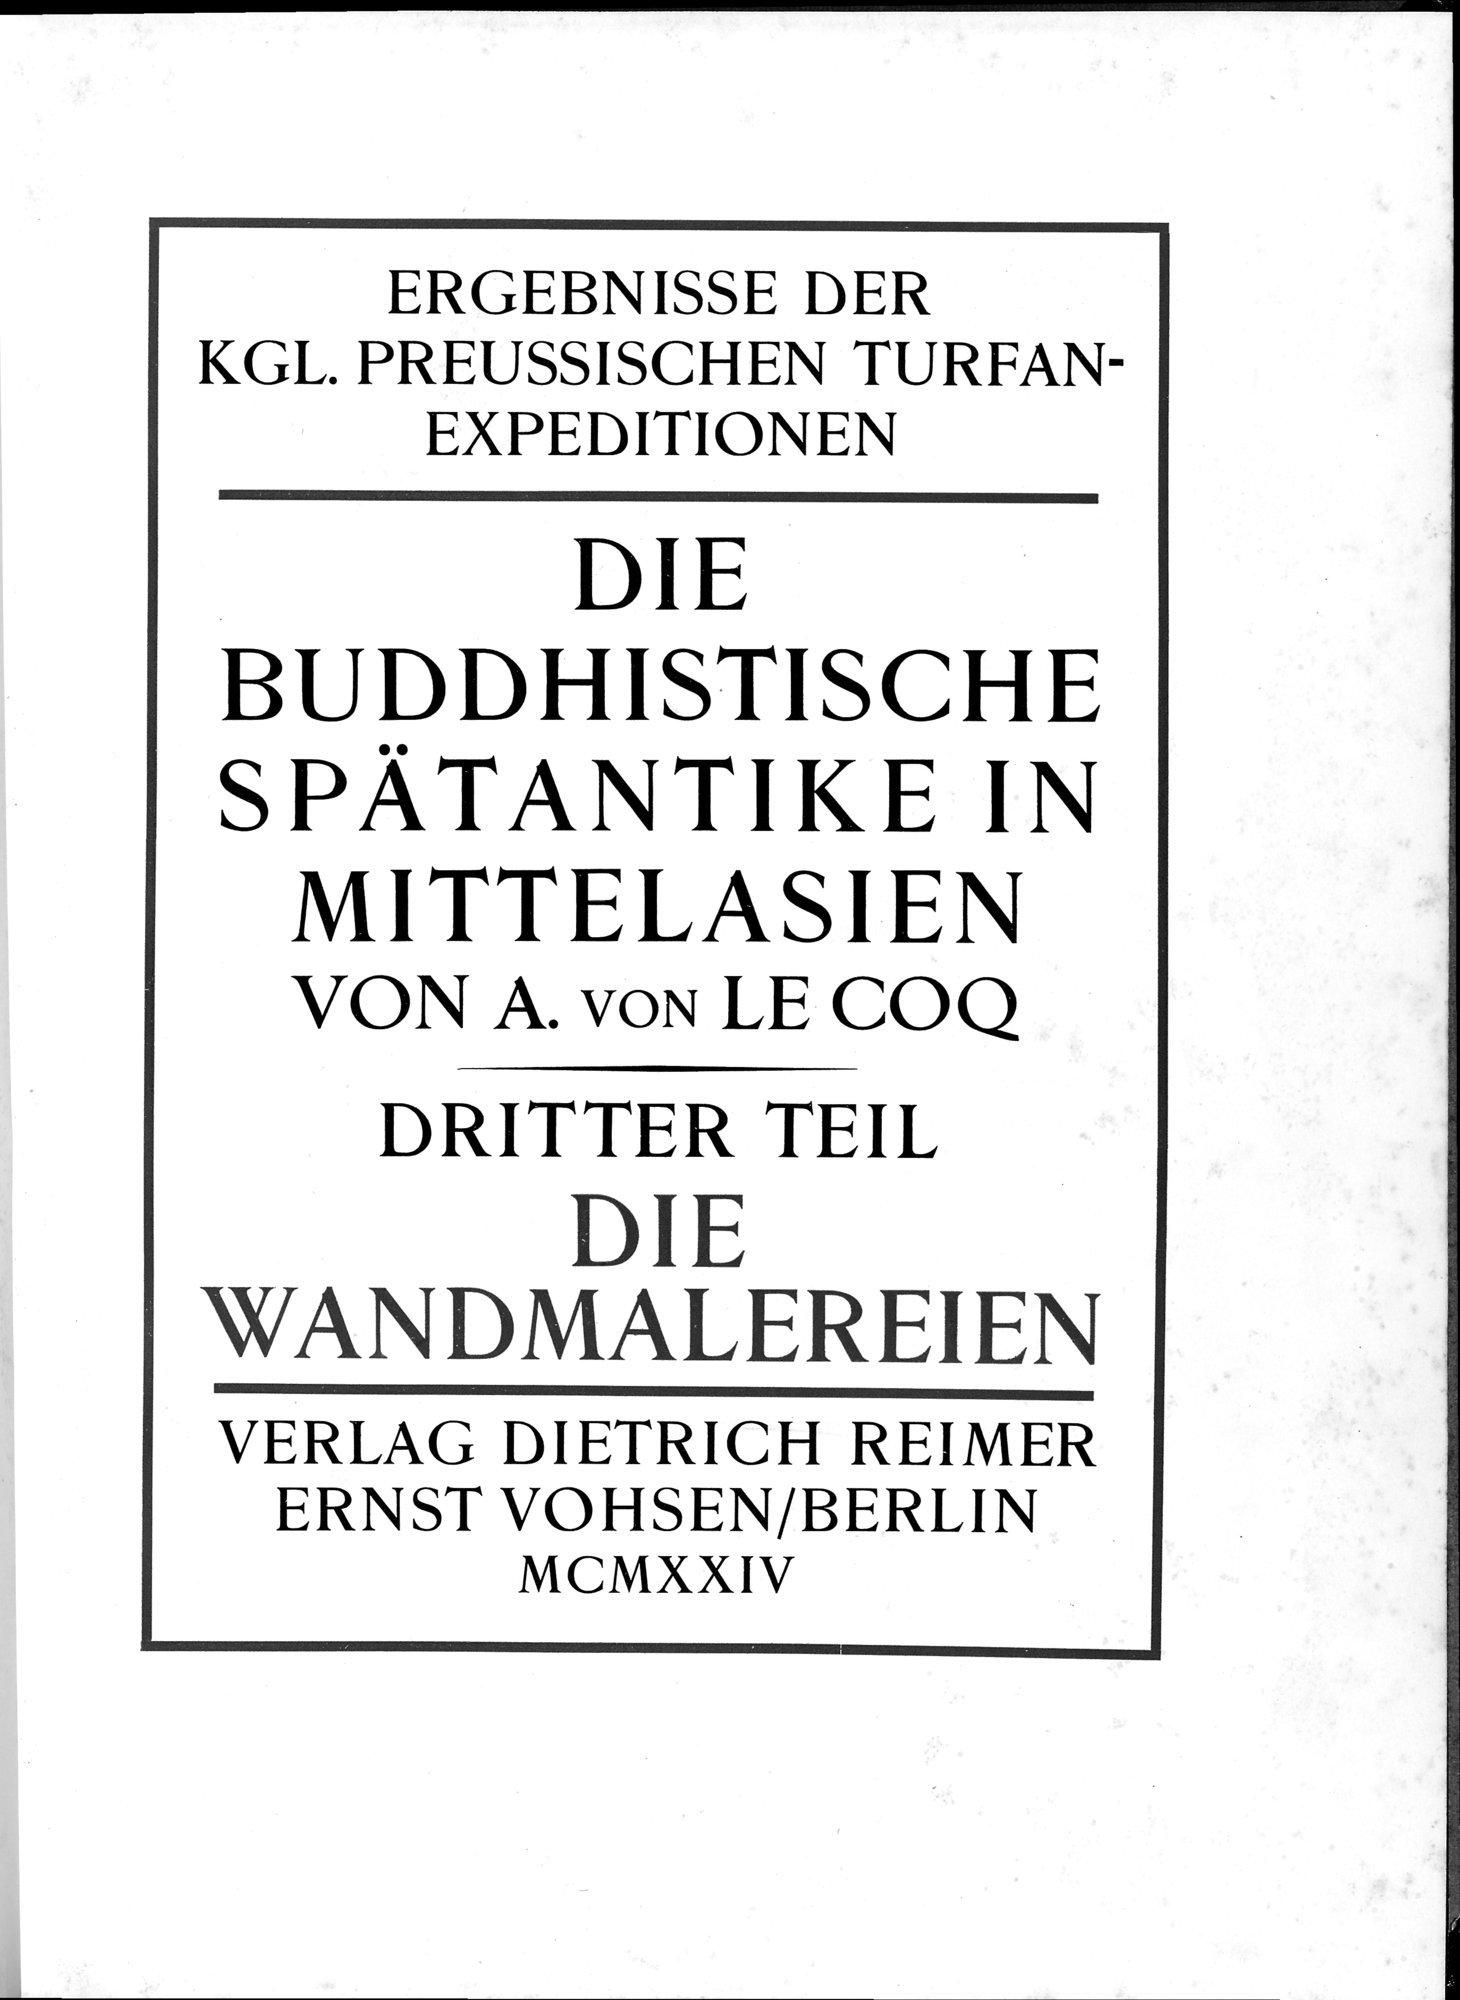 Die Buddhistische Spätantike in Mittelasien : vol.3 / Page 7 (Grayscale High Resolution Image)